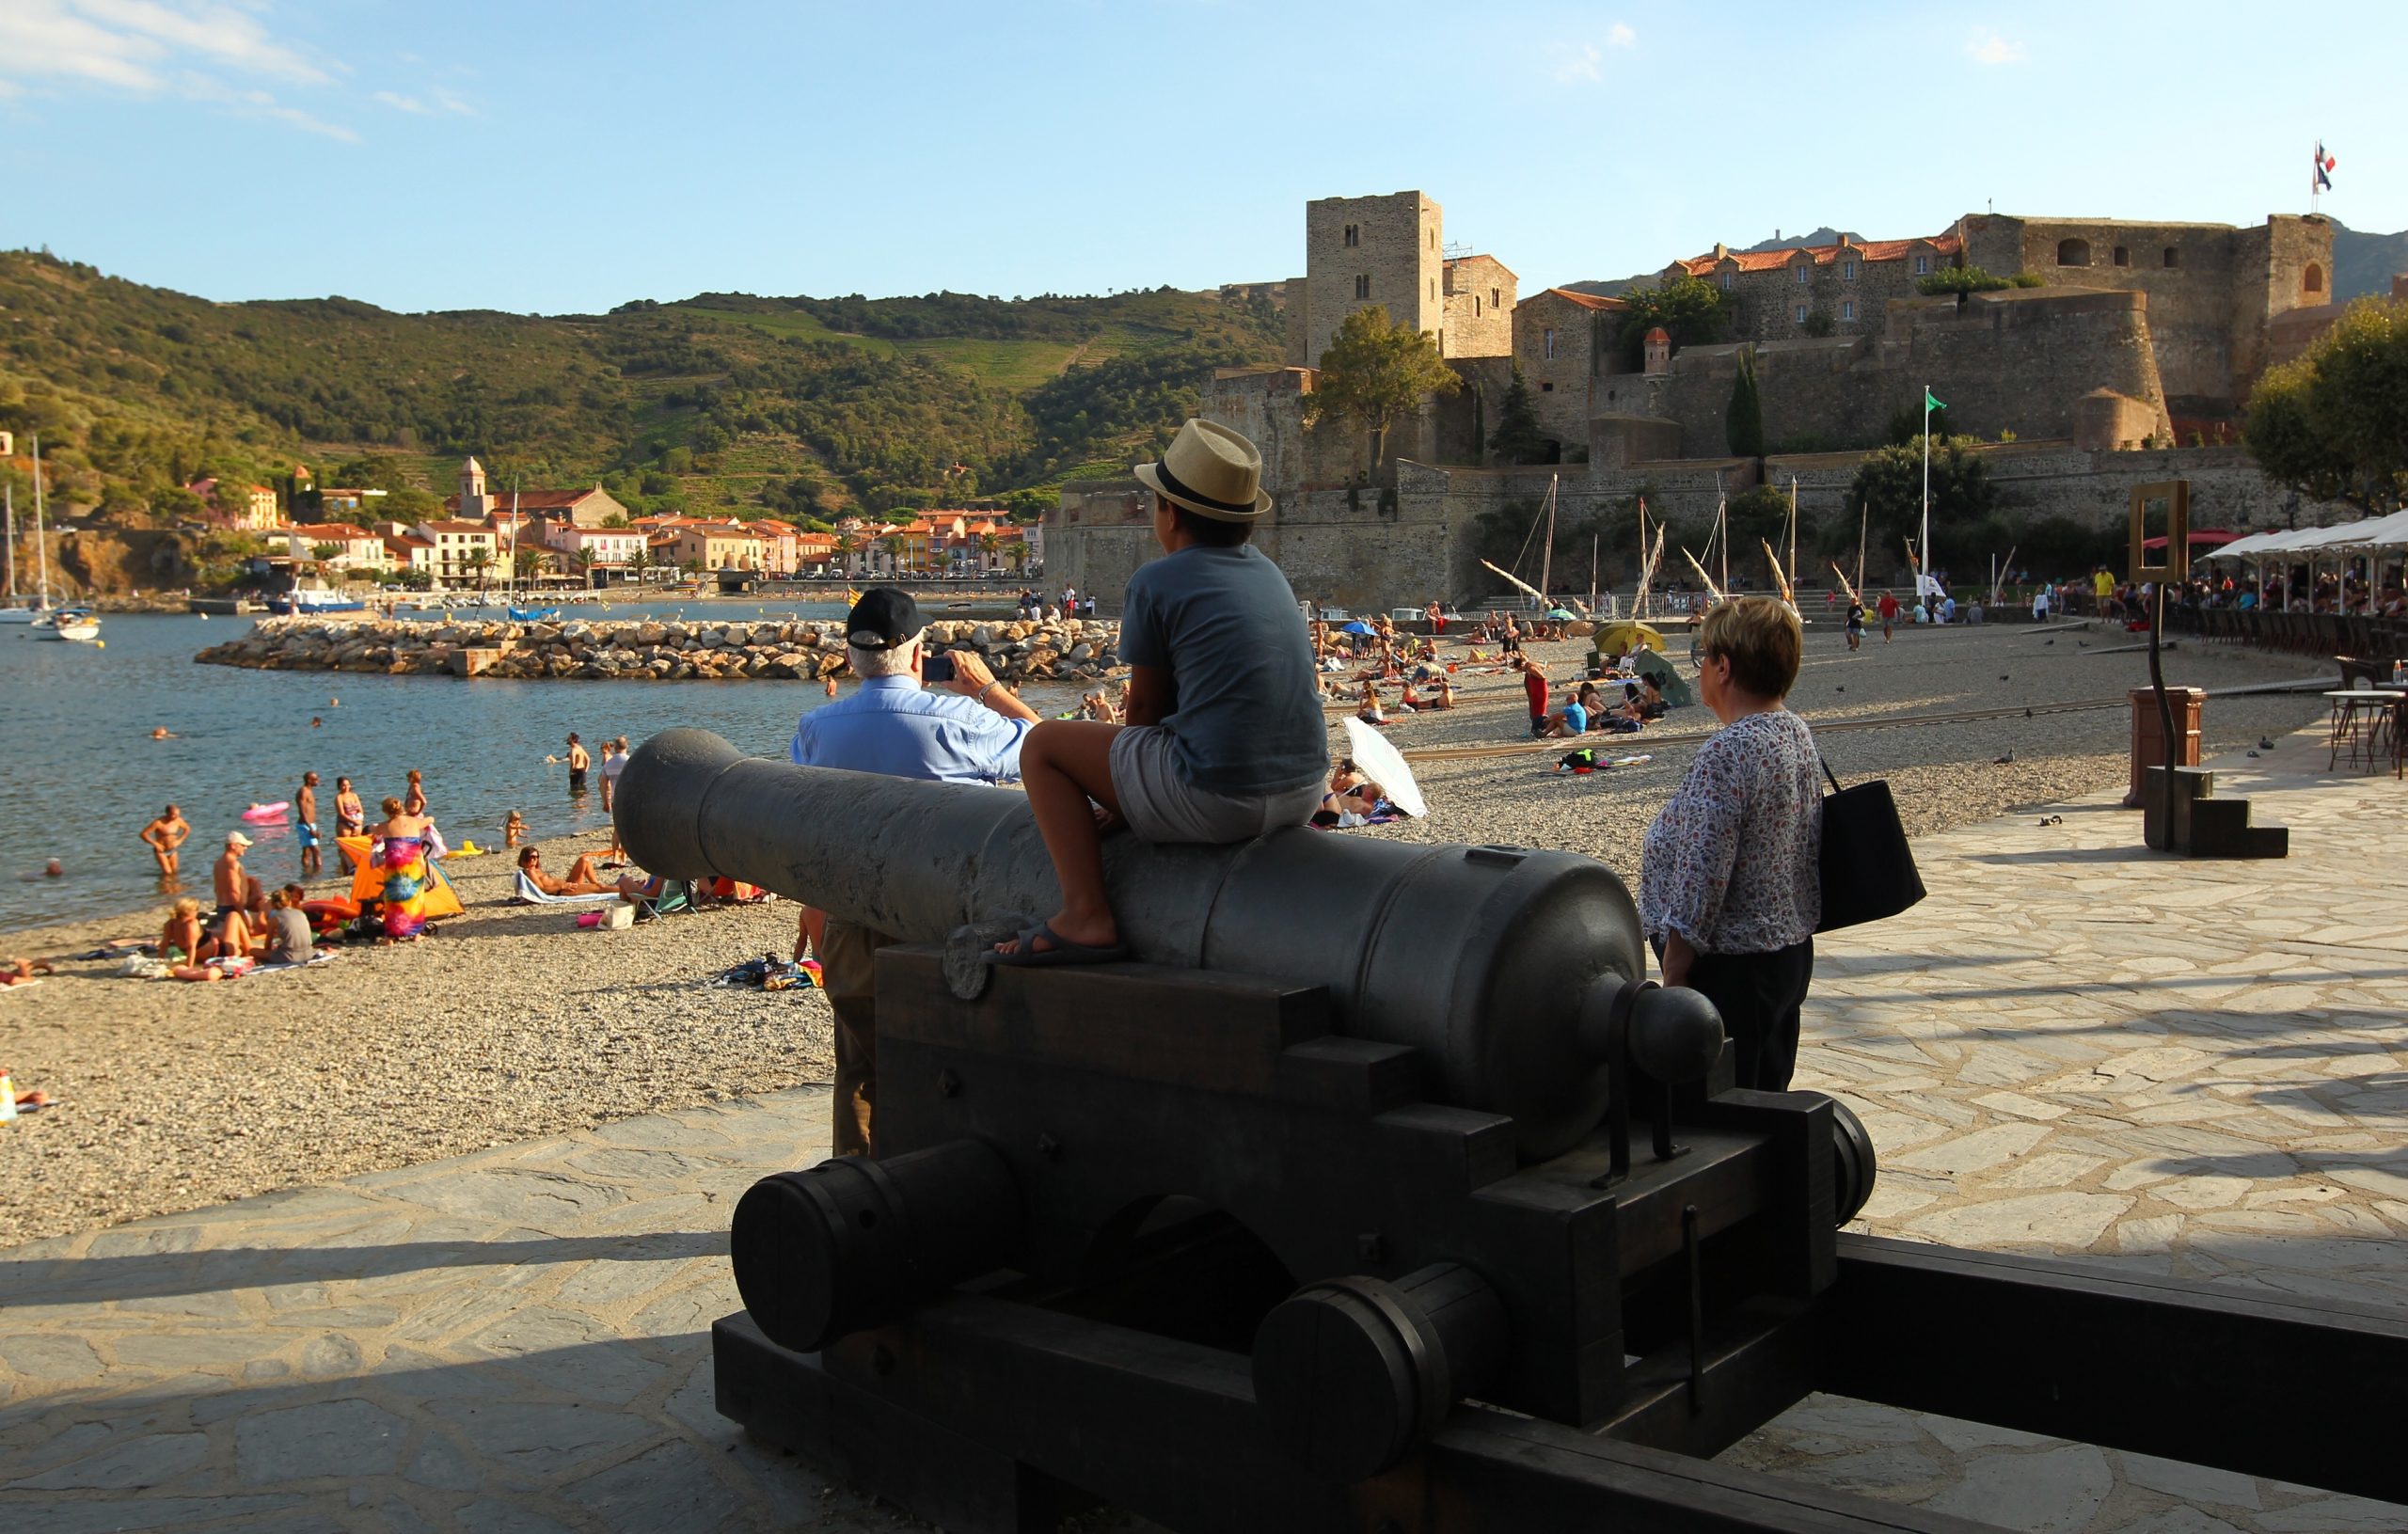 02.09.2016., Collioure - Na jugu Francuske u blizini same granice sa Spanjolskom, smjestio se Collioure, gradic poznat kao mjesto podrijetla umjetnickog smjera fovizma. Pocetkom 20. stoljeca postao je srediste umjetnicke aktivnosti, a njegove srednjovjekovne ulice, dvorac, svjetionik pretvoren u crkvu te tipicni mediteranski duh nadahnuli su i neka od velikih imena svijeta umjetnosti, kao sto su Henri Matisse, Andre Derain, Pablo Picasso, Georges Braque i Charles Rennie Mackintosh. 
Grad je poznat po izvrsnom vinu i lijepim plazama. 
Photo: Zeljko Lukunic/PIXSELL